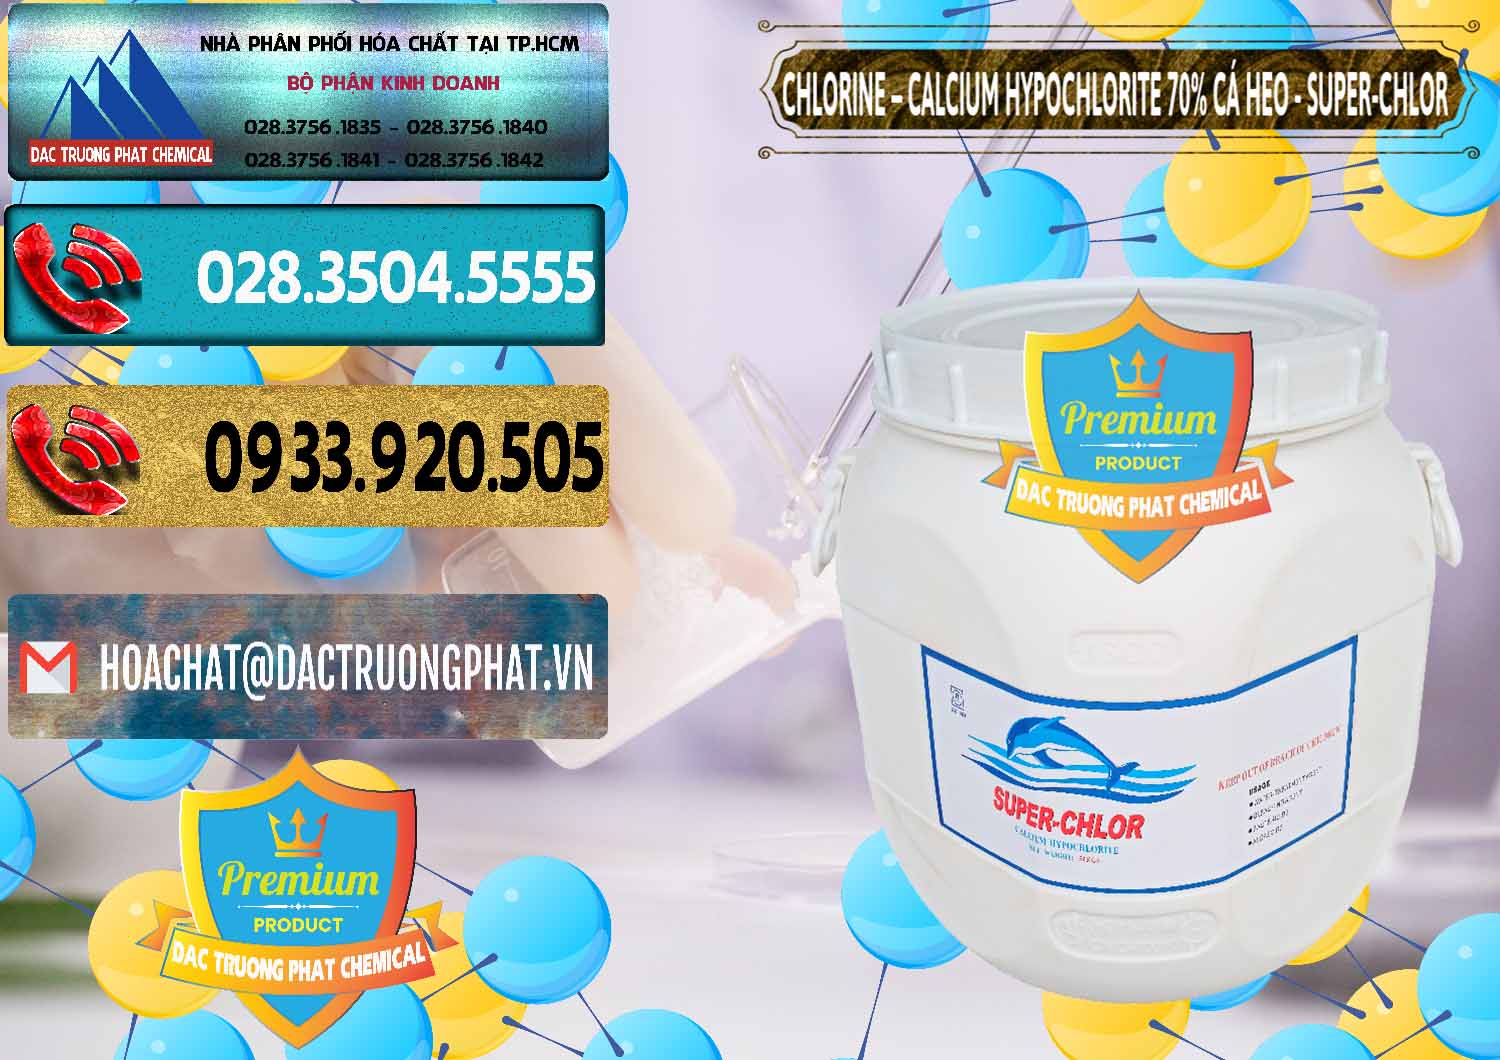 Đơn vị chuyên kinh doanh và bán Clorin - Chlorine Cá Heo 70% Super Chlor Trung Quốc China - 0058 - Cty chuyên kinh doanh và cung cấp hóa chất tại TP.HCM - hoachatdetnhuom.com